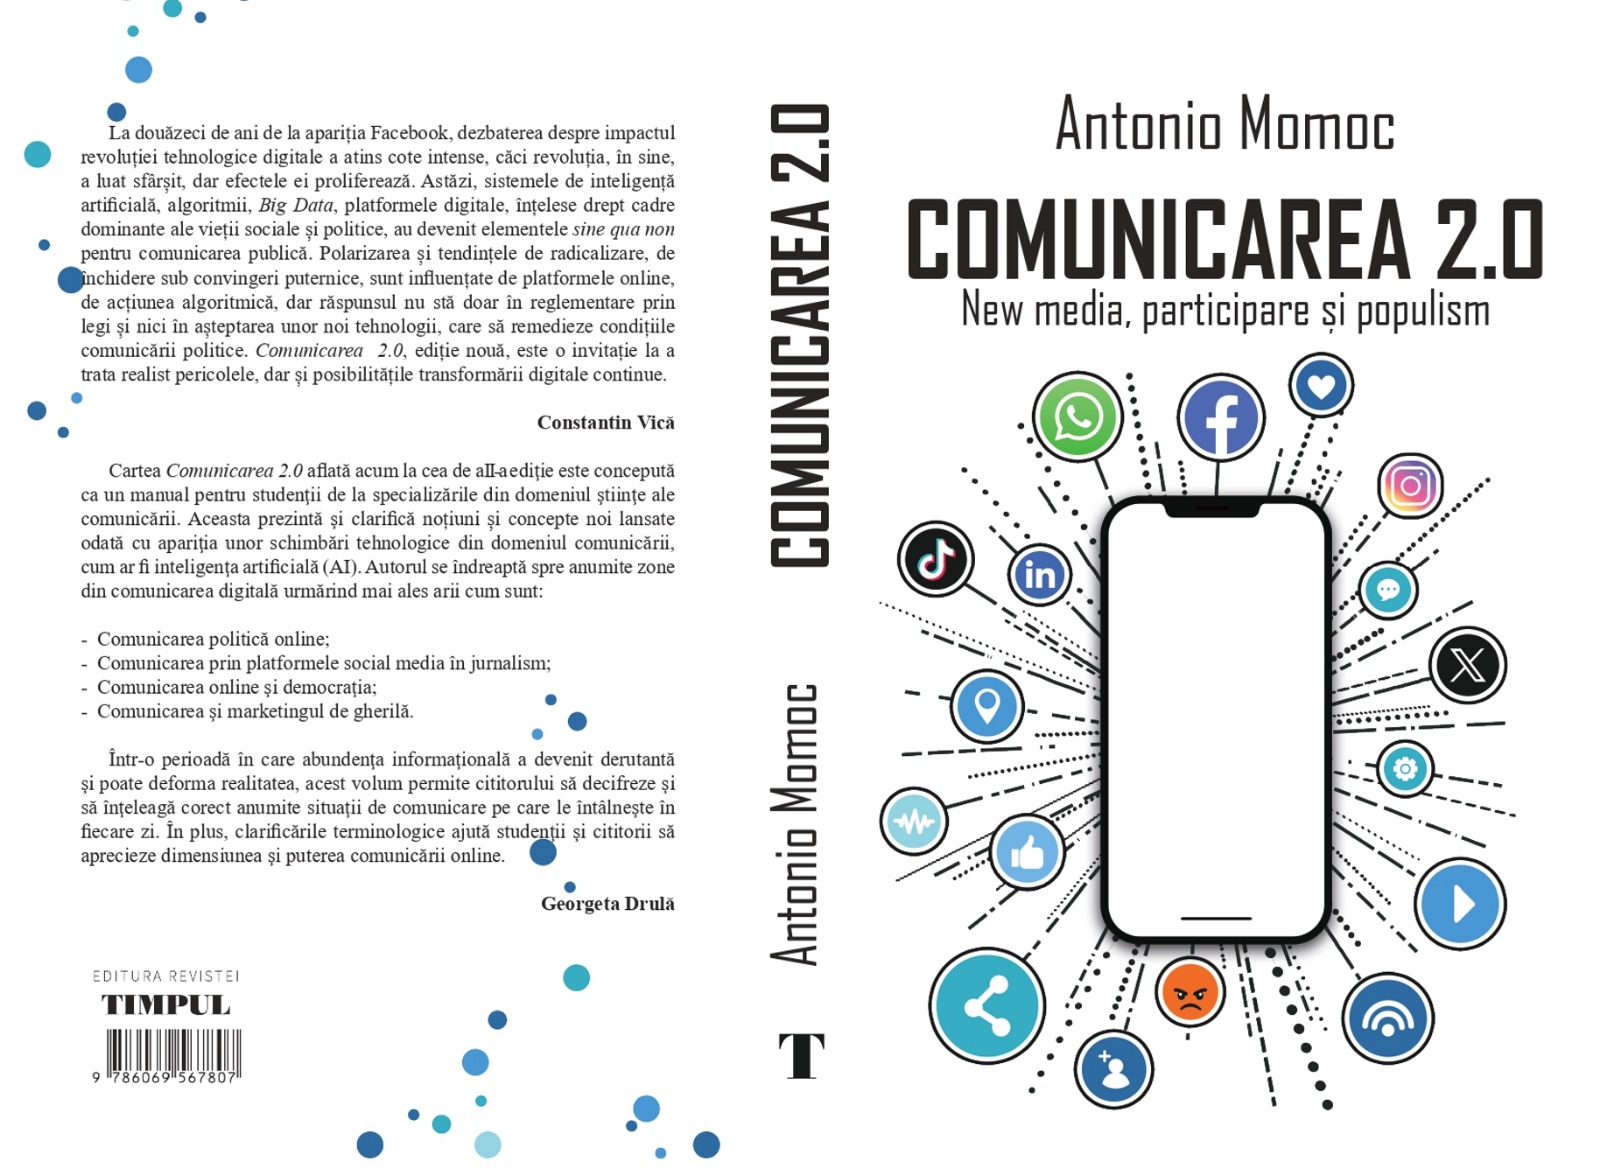 „Comunicarea 2.0”, cartea despre noile tehnologii digitale, alegeri și populism. Un volum semnat de Antonio Momoc